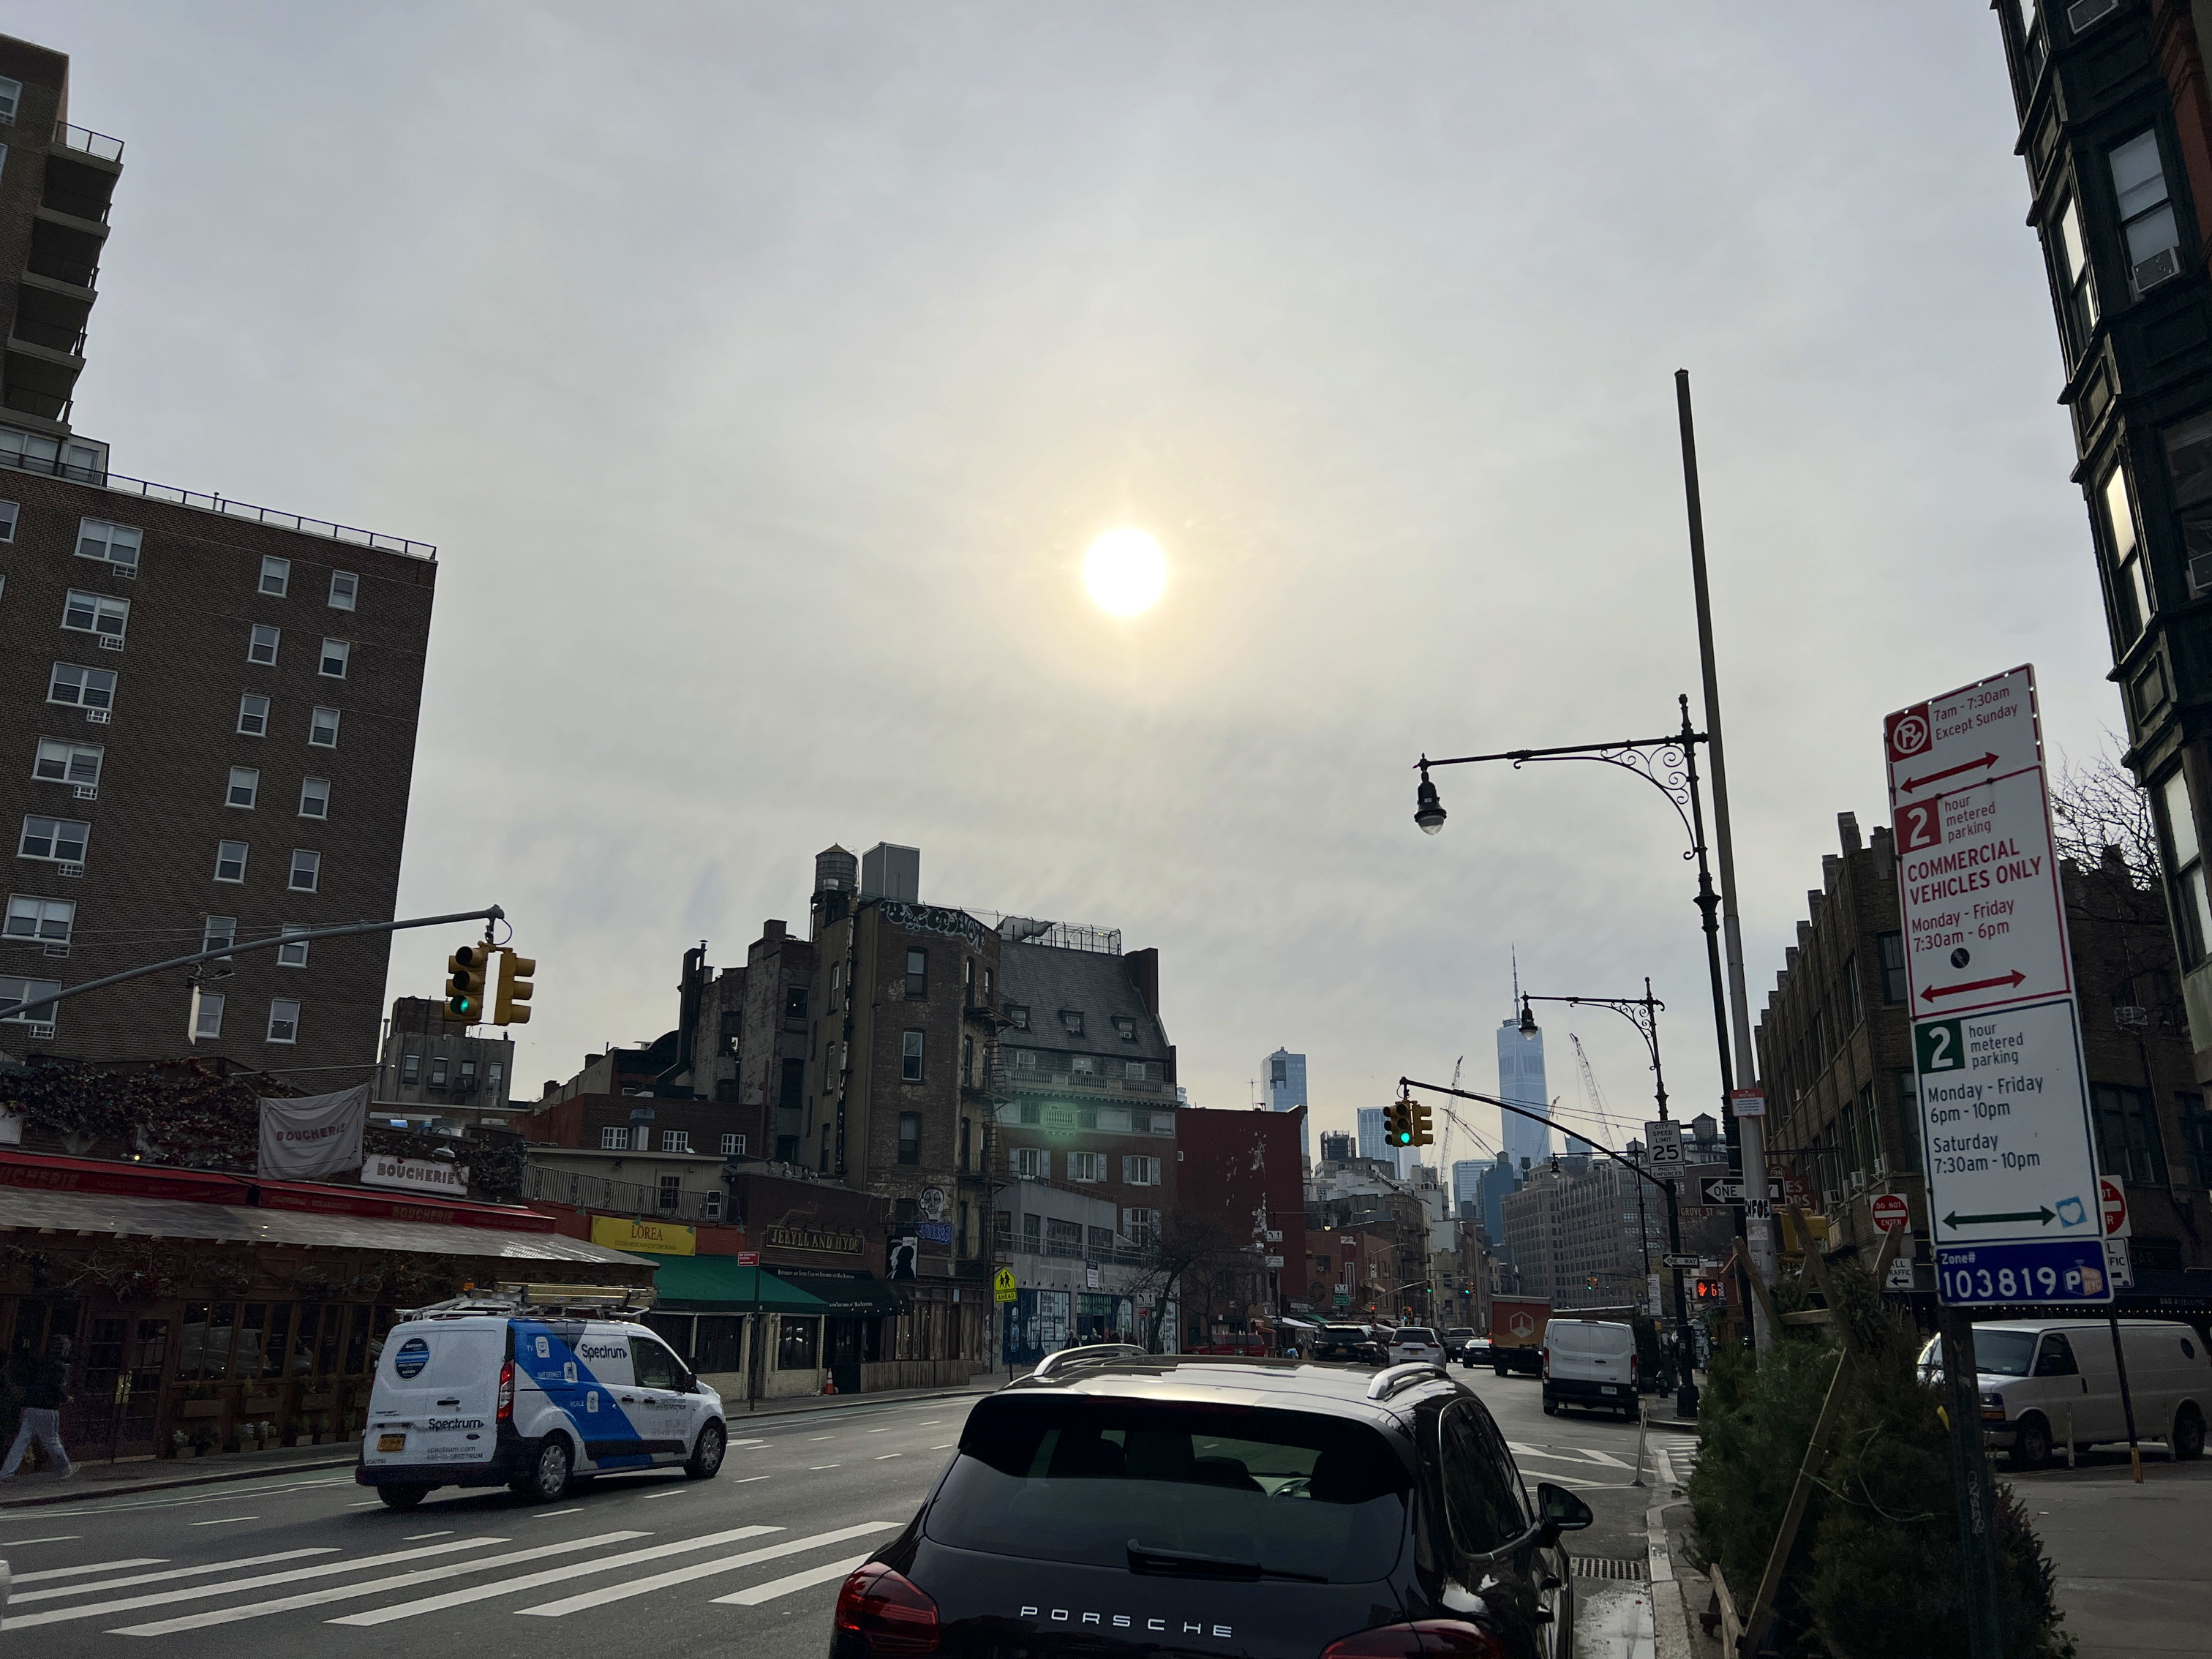 In West Village scheint die Sonne aus dem diesigen Himmel